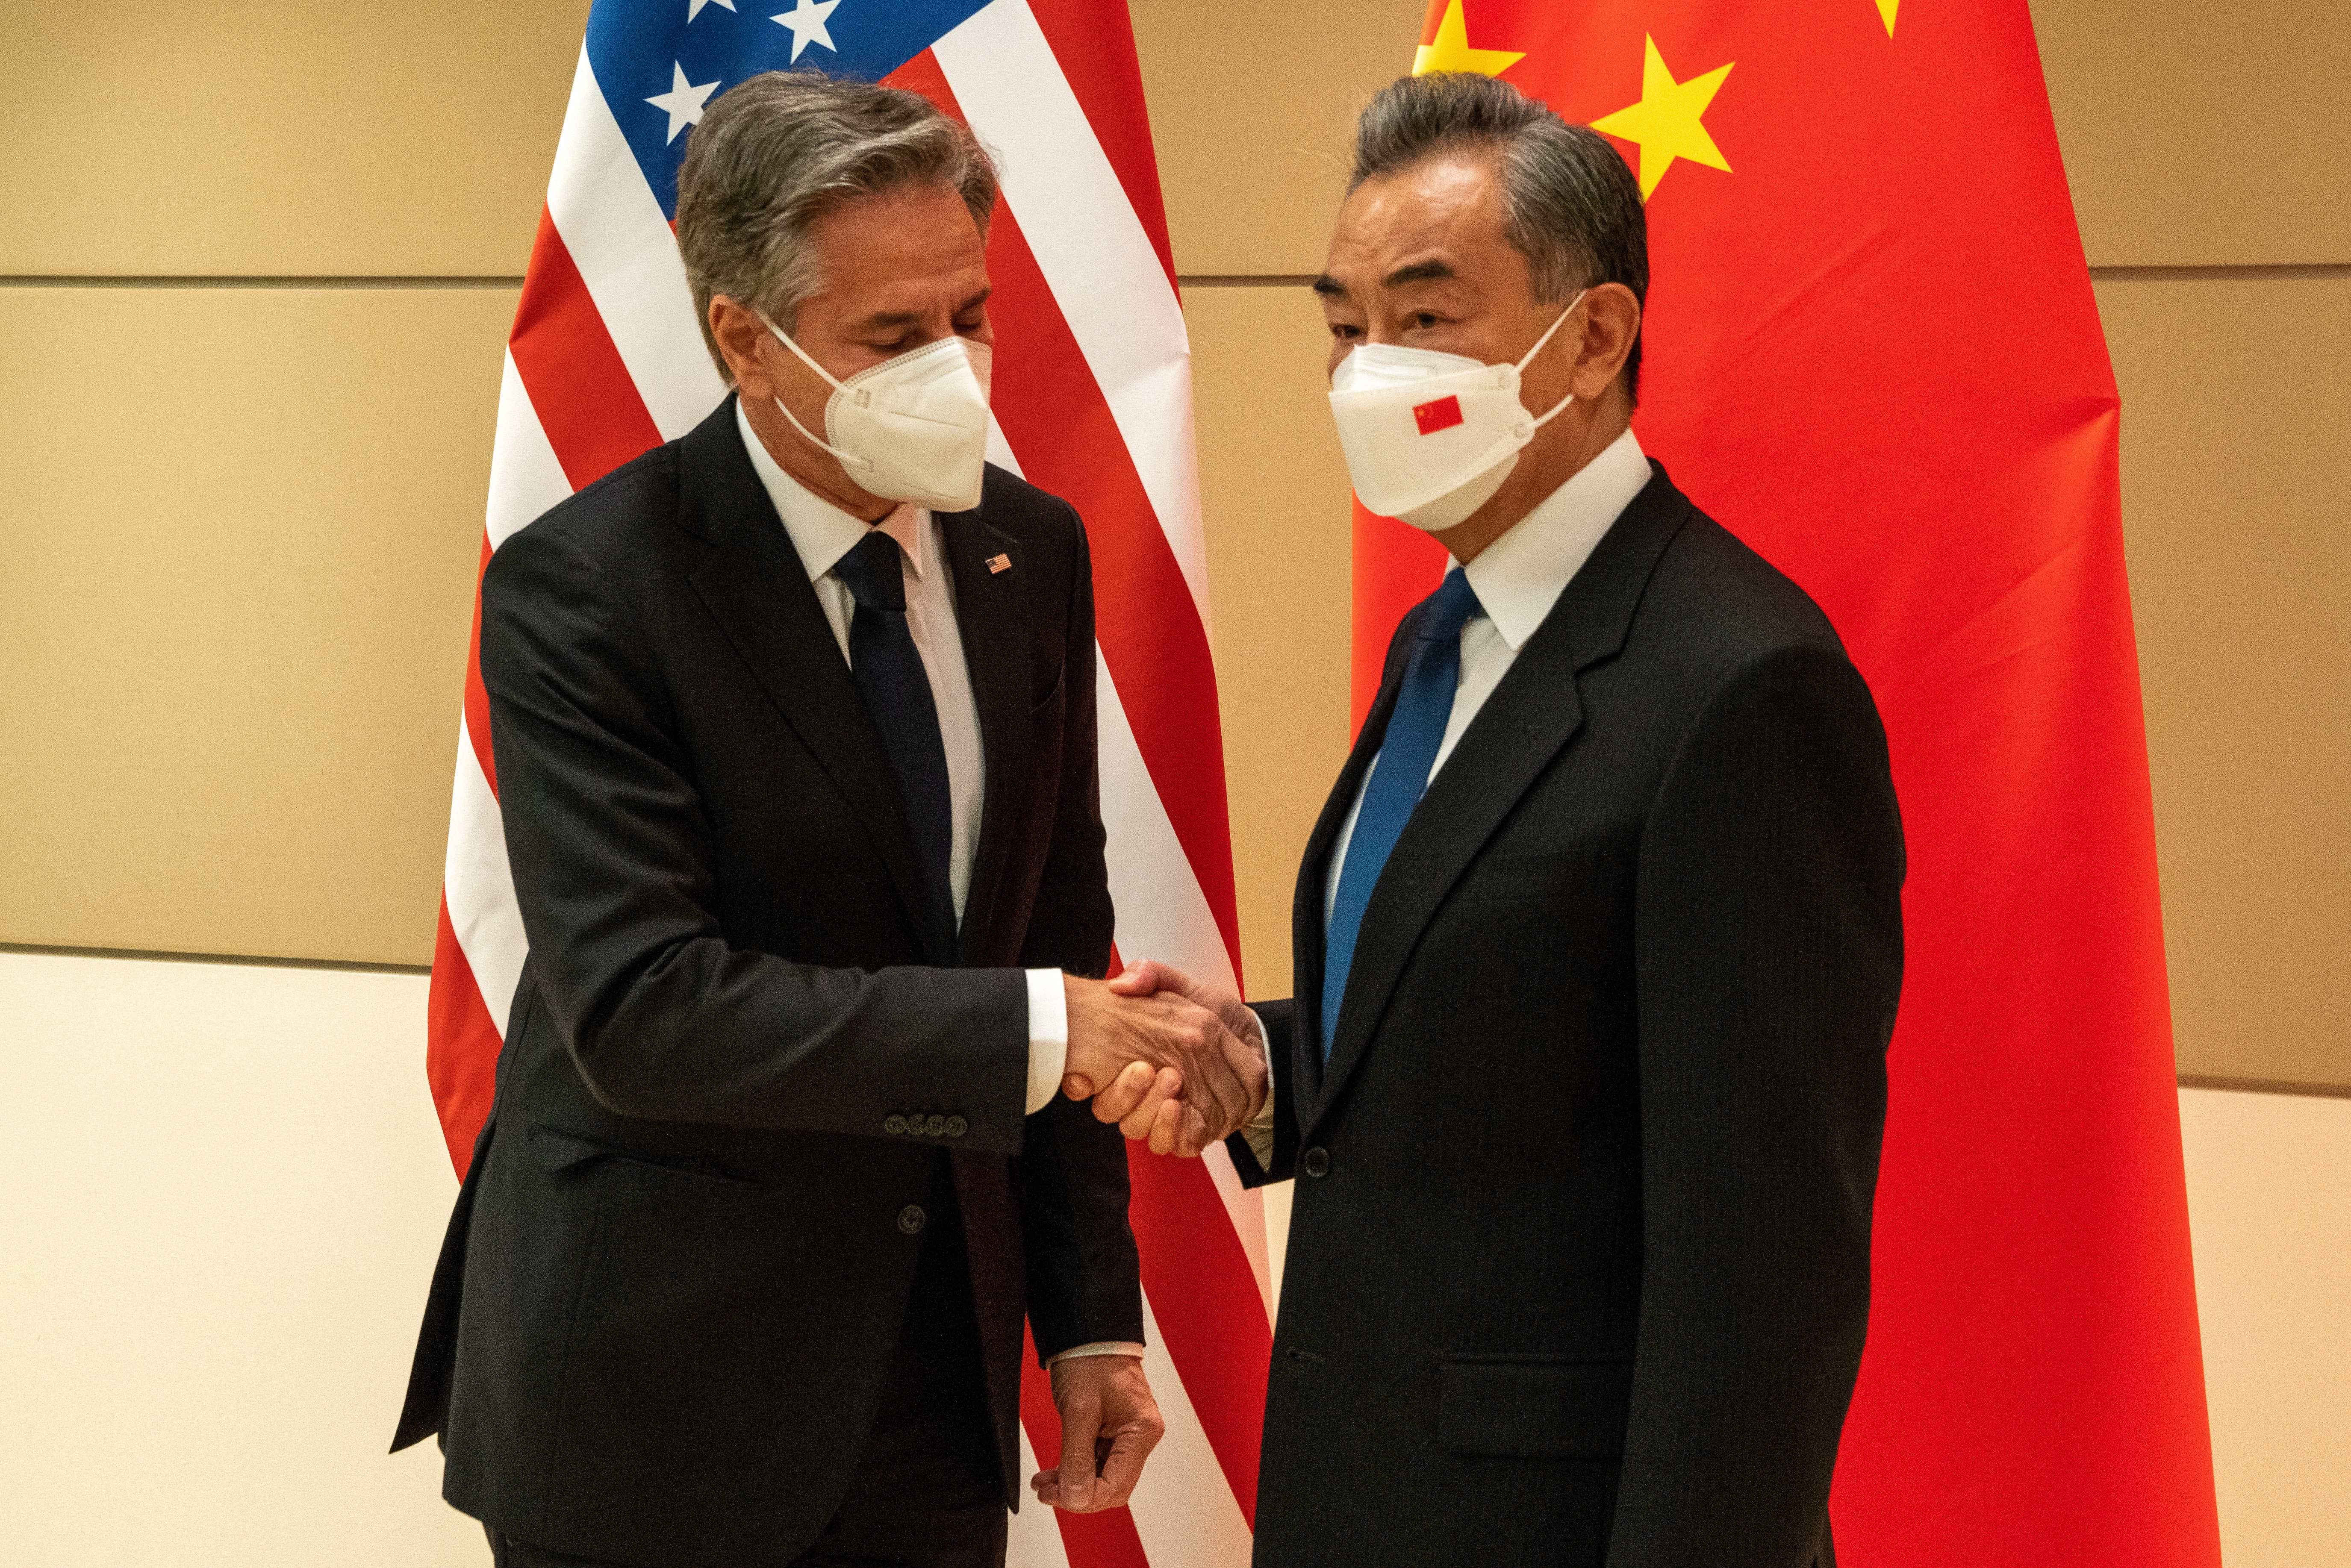 El apretón de manos de Antony Blinken y Wang Yi en Nueva York (REUTERS/David 'Dee' Delgado)